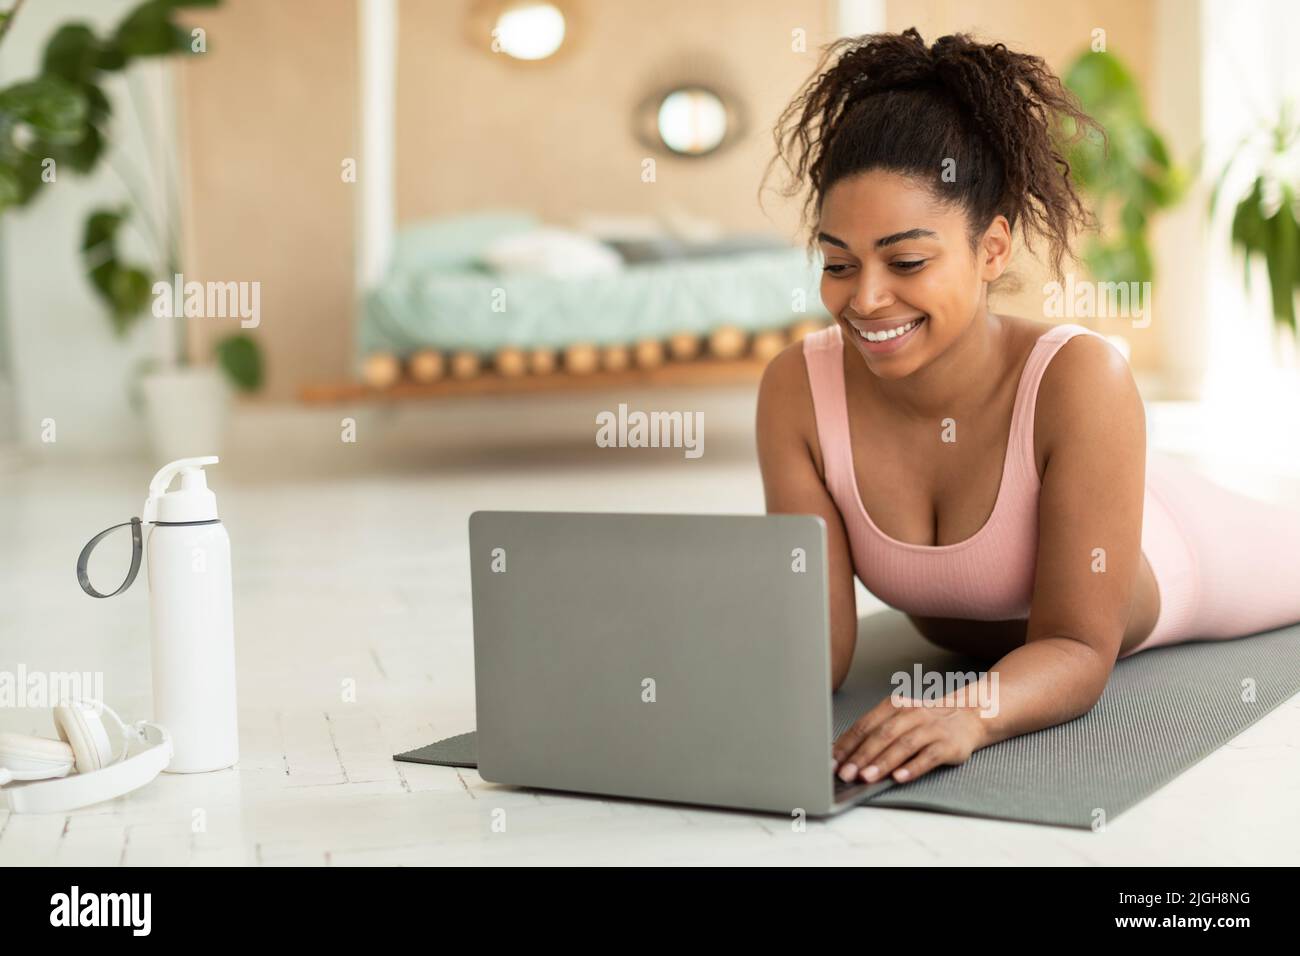 Bonne jeune femme noire couchée sur un tapis et utilisant un ordinateur portable, parlant à l'entraîneur sur le Web ou regardant des vidéos de sport Banque D'Images